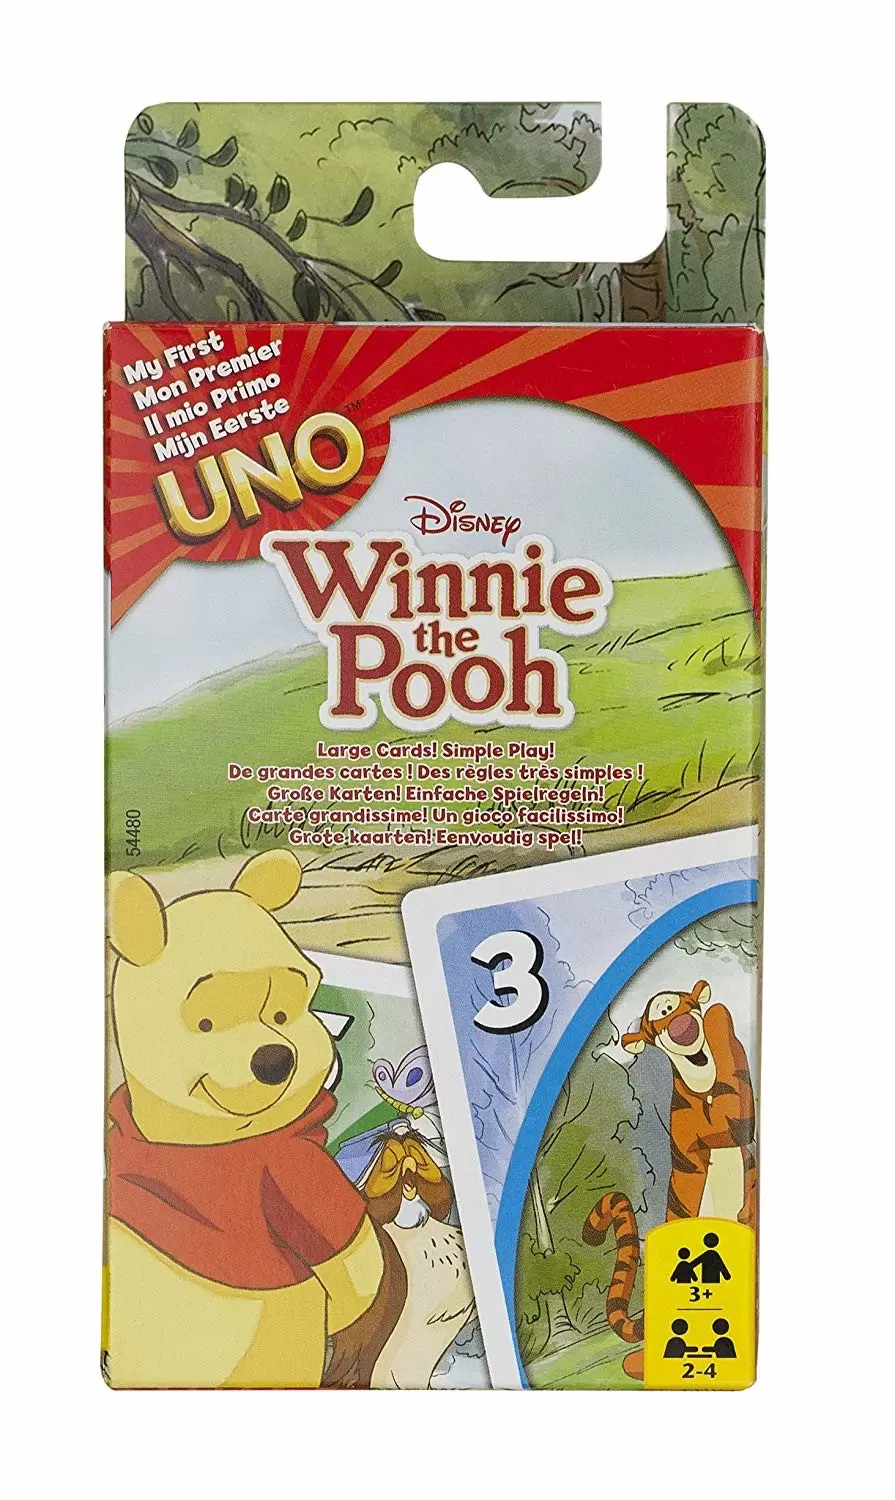 UNO - UNO Winnie The Pooh